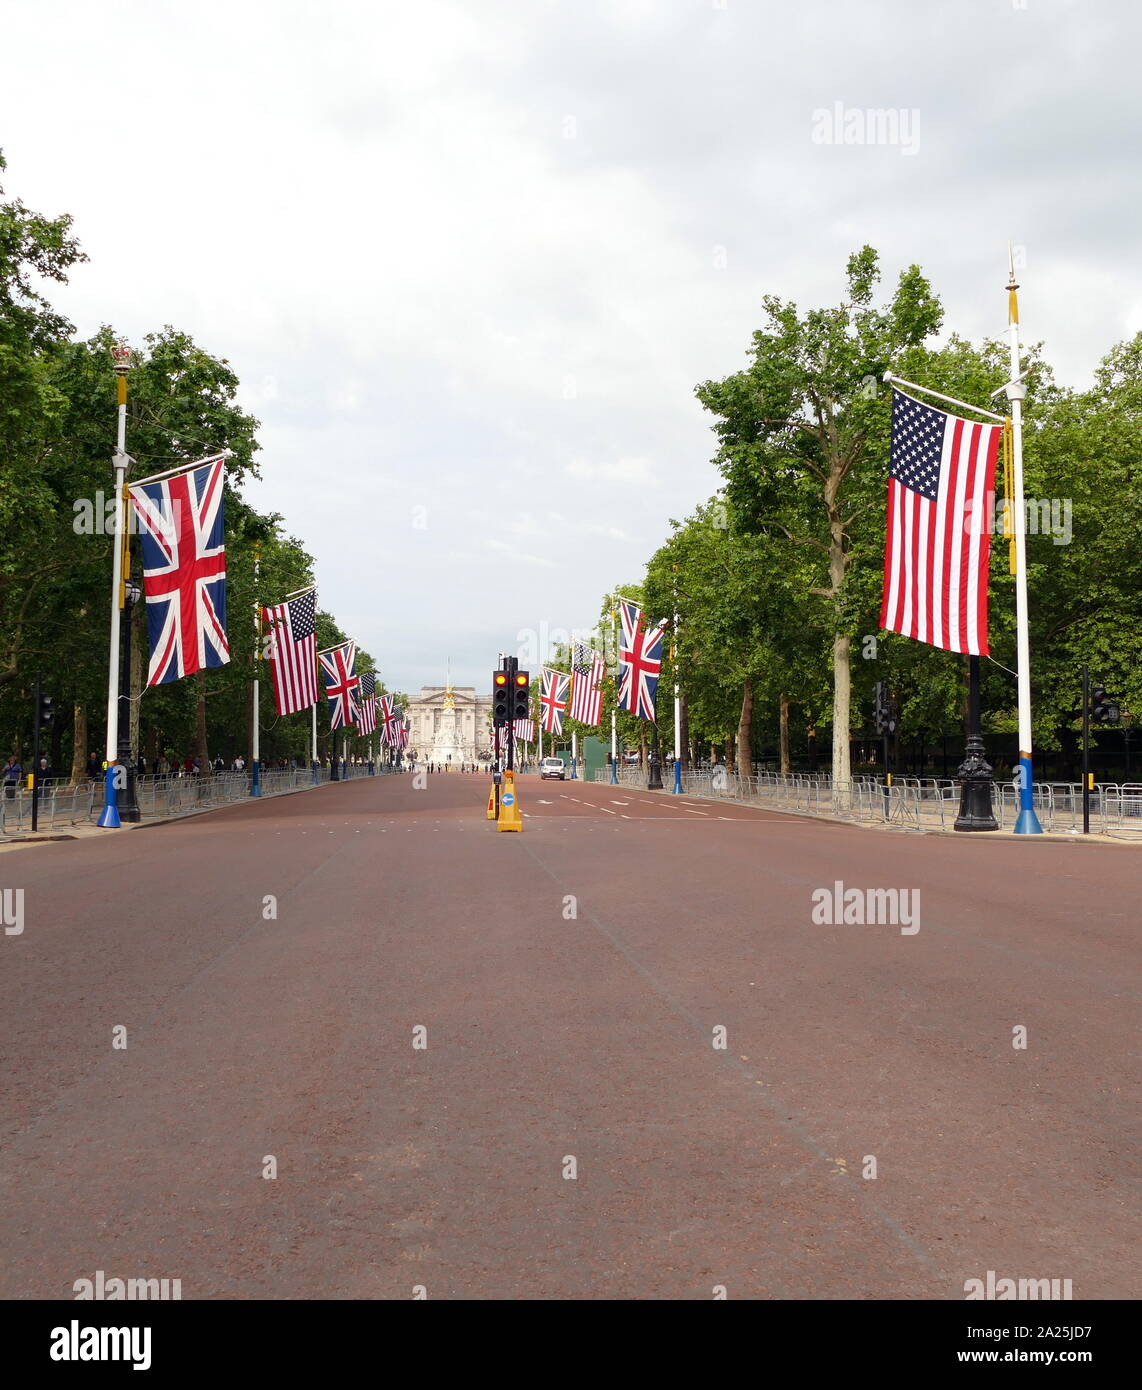 Die Mall auf dem Weg zum Buckingham Palace, London, die von der Polizei gesicherte Zugang für Proteste während des Staatsbesuchs von Präsident Donald Trump Juni 2019 zu verhindern. Stockfoto